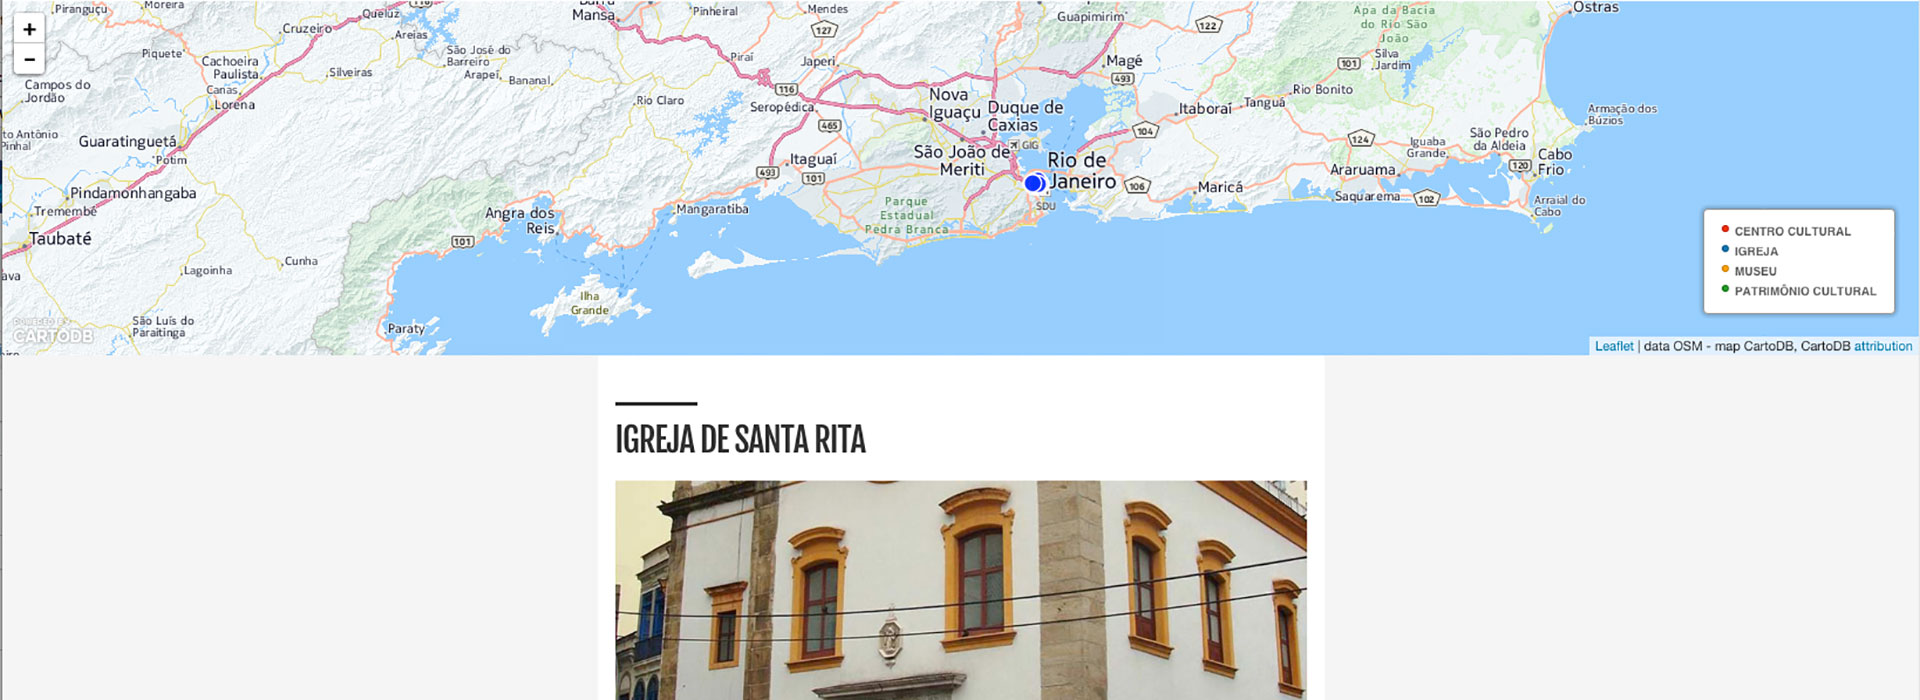 Image of project “Tudo Sobre - Rio em transformação - Mapa cultural”